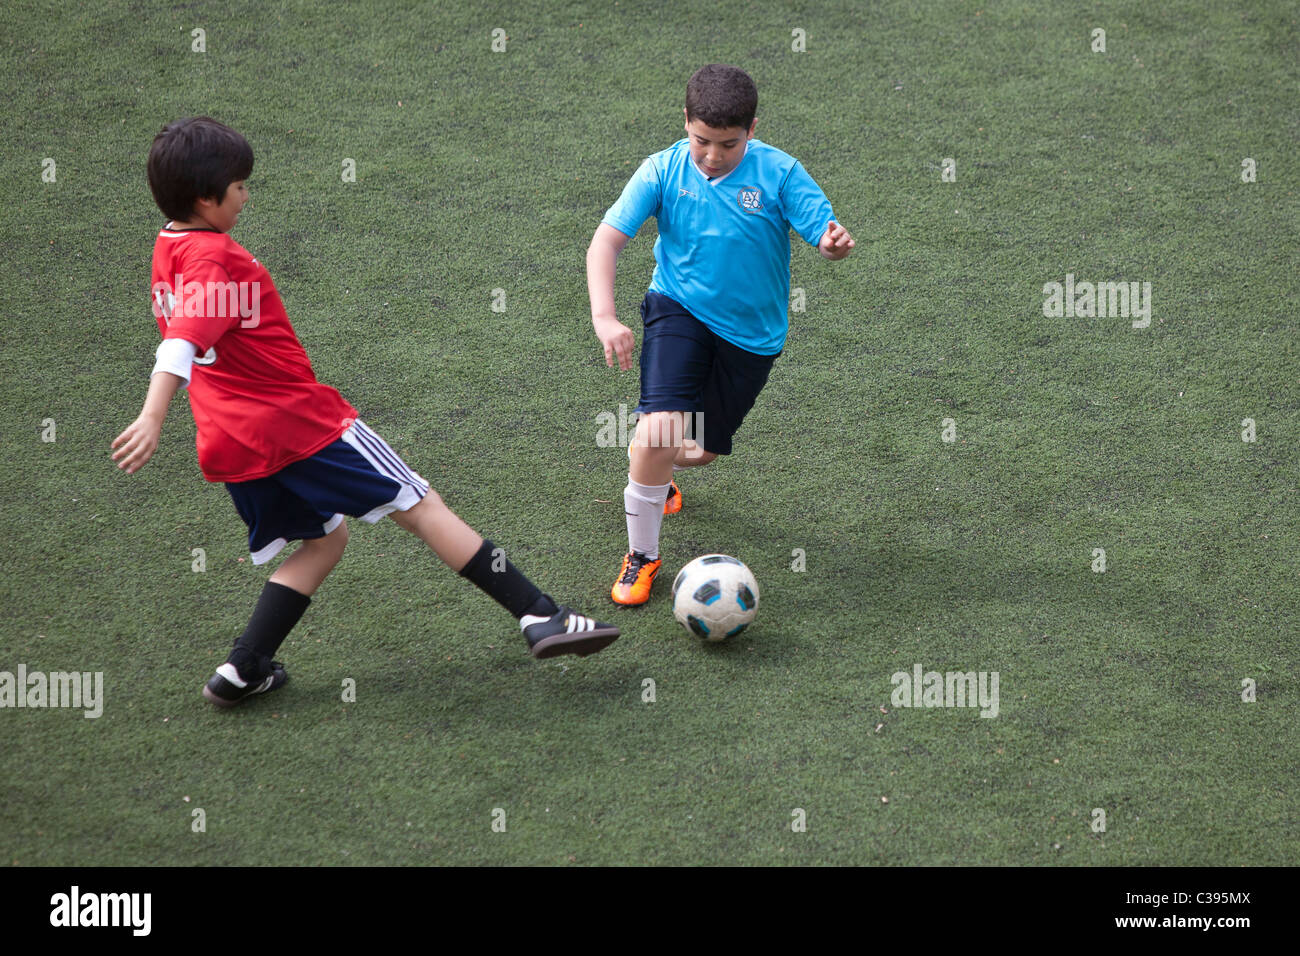 Action de jeu de soccer du garçon. Banque D'Images